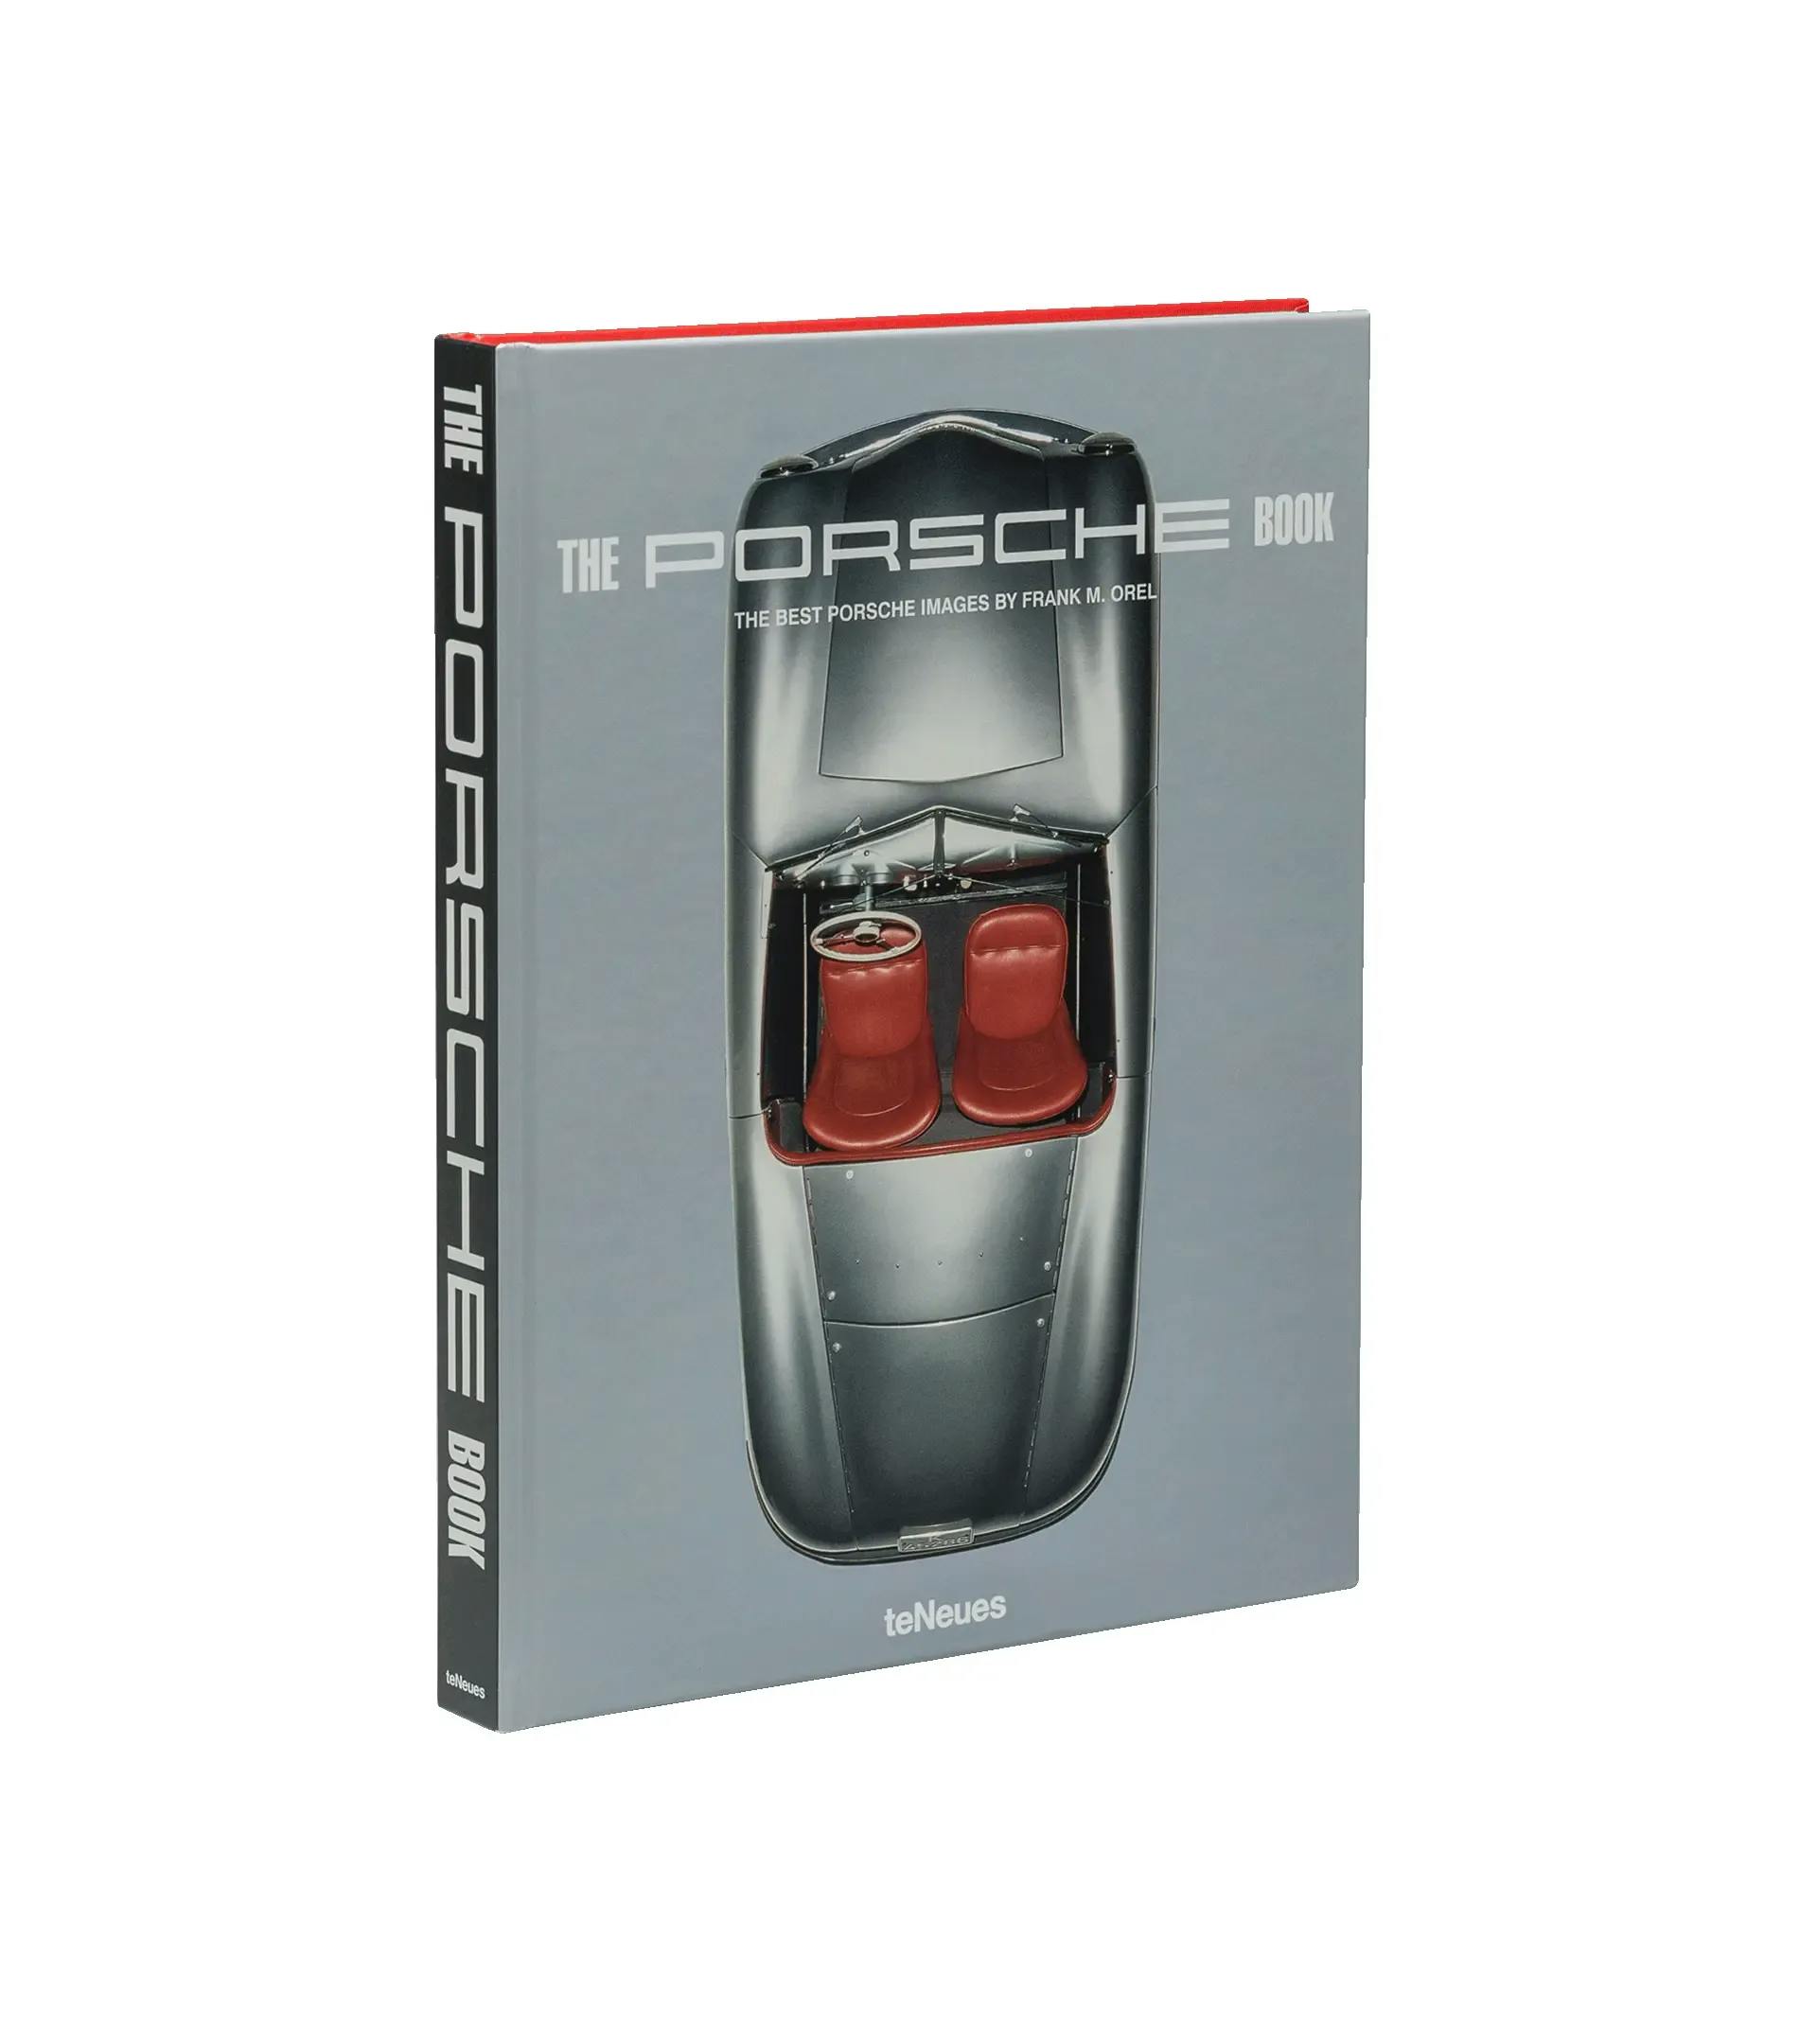 The Porsche Book - Le migliori immagini Porsche di Frank M. Orel 1